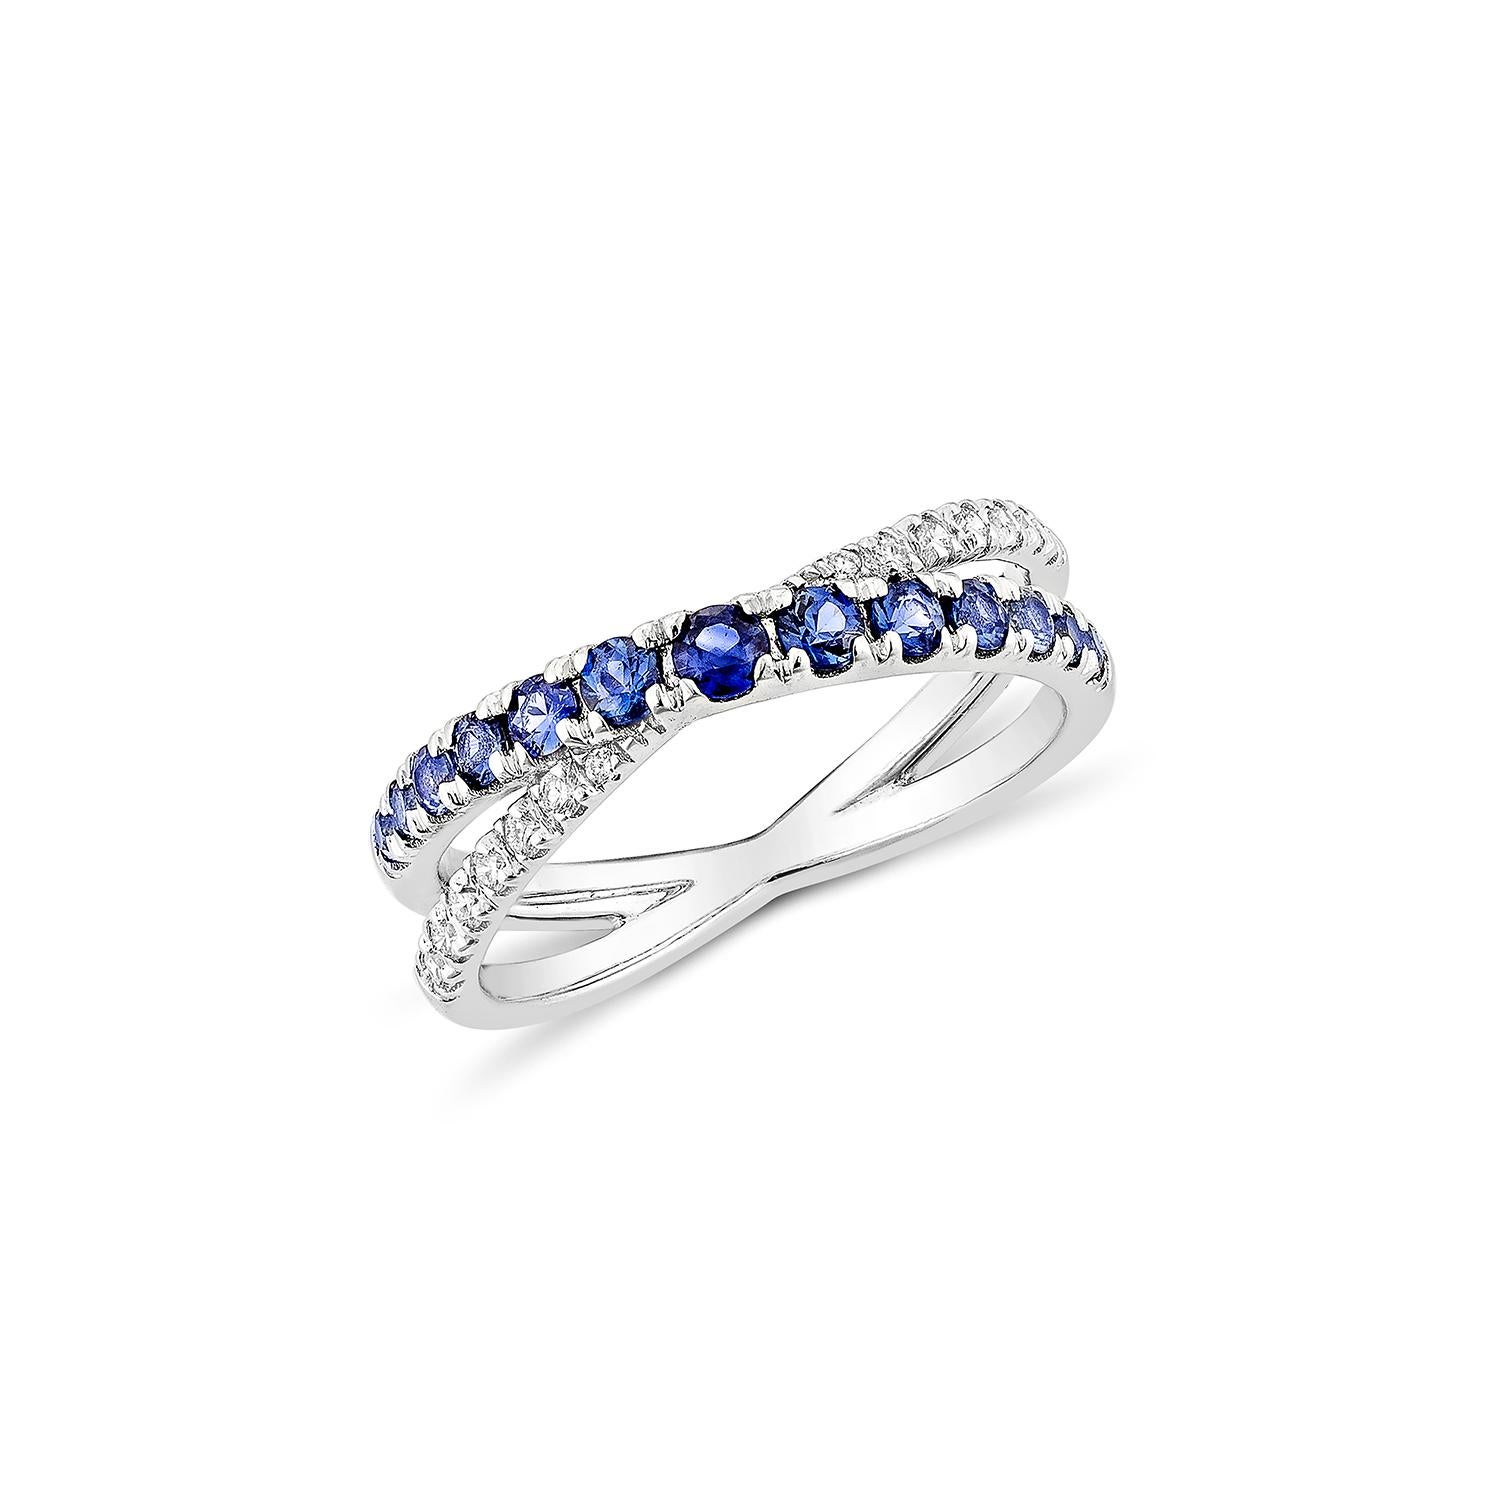 Erhöhen Sie Ihren Stil mit unserem stapelbaren Ring mit blauem Saphir, der mit einem strahlend blauen Saphir und einem weißen Diamanten in 14 Karat Weißgold geschmückt ist. Dieser zarte und doch bezaubernde Ring verleiht jedem Look einen Hauch von